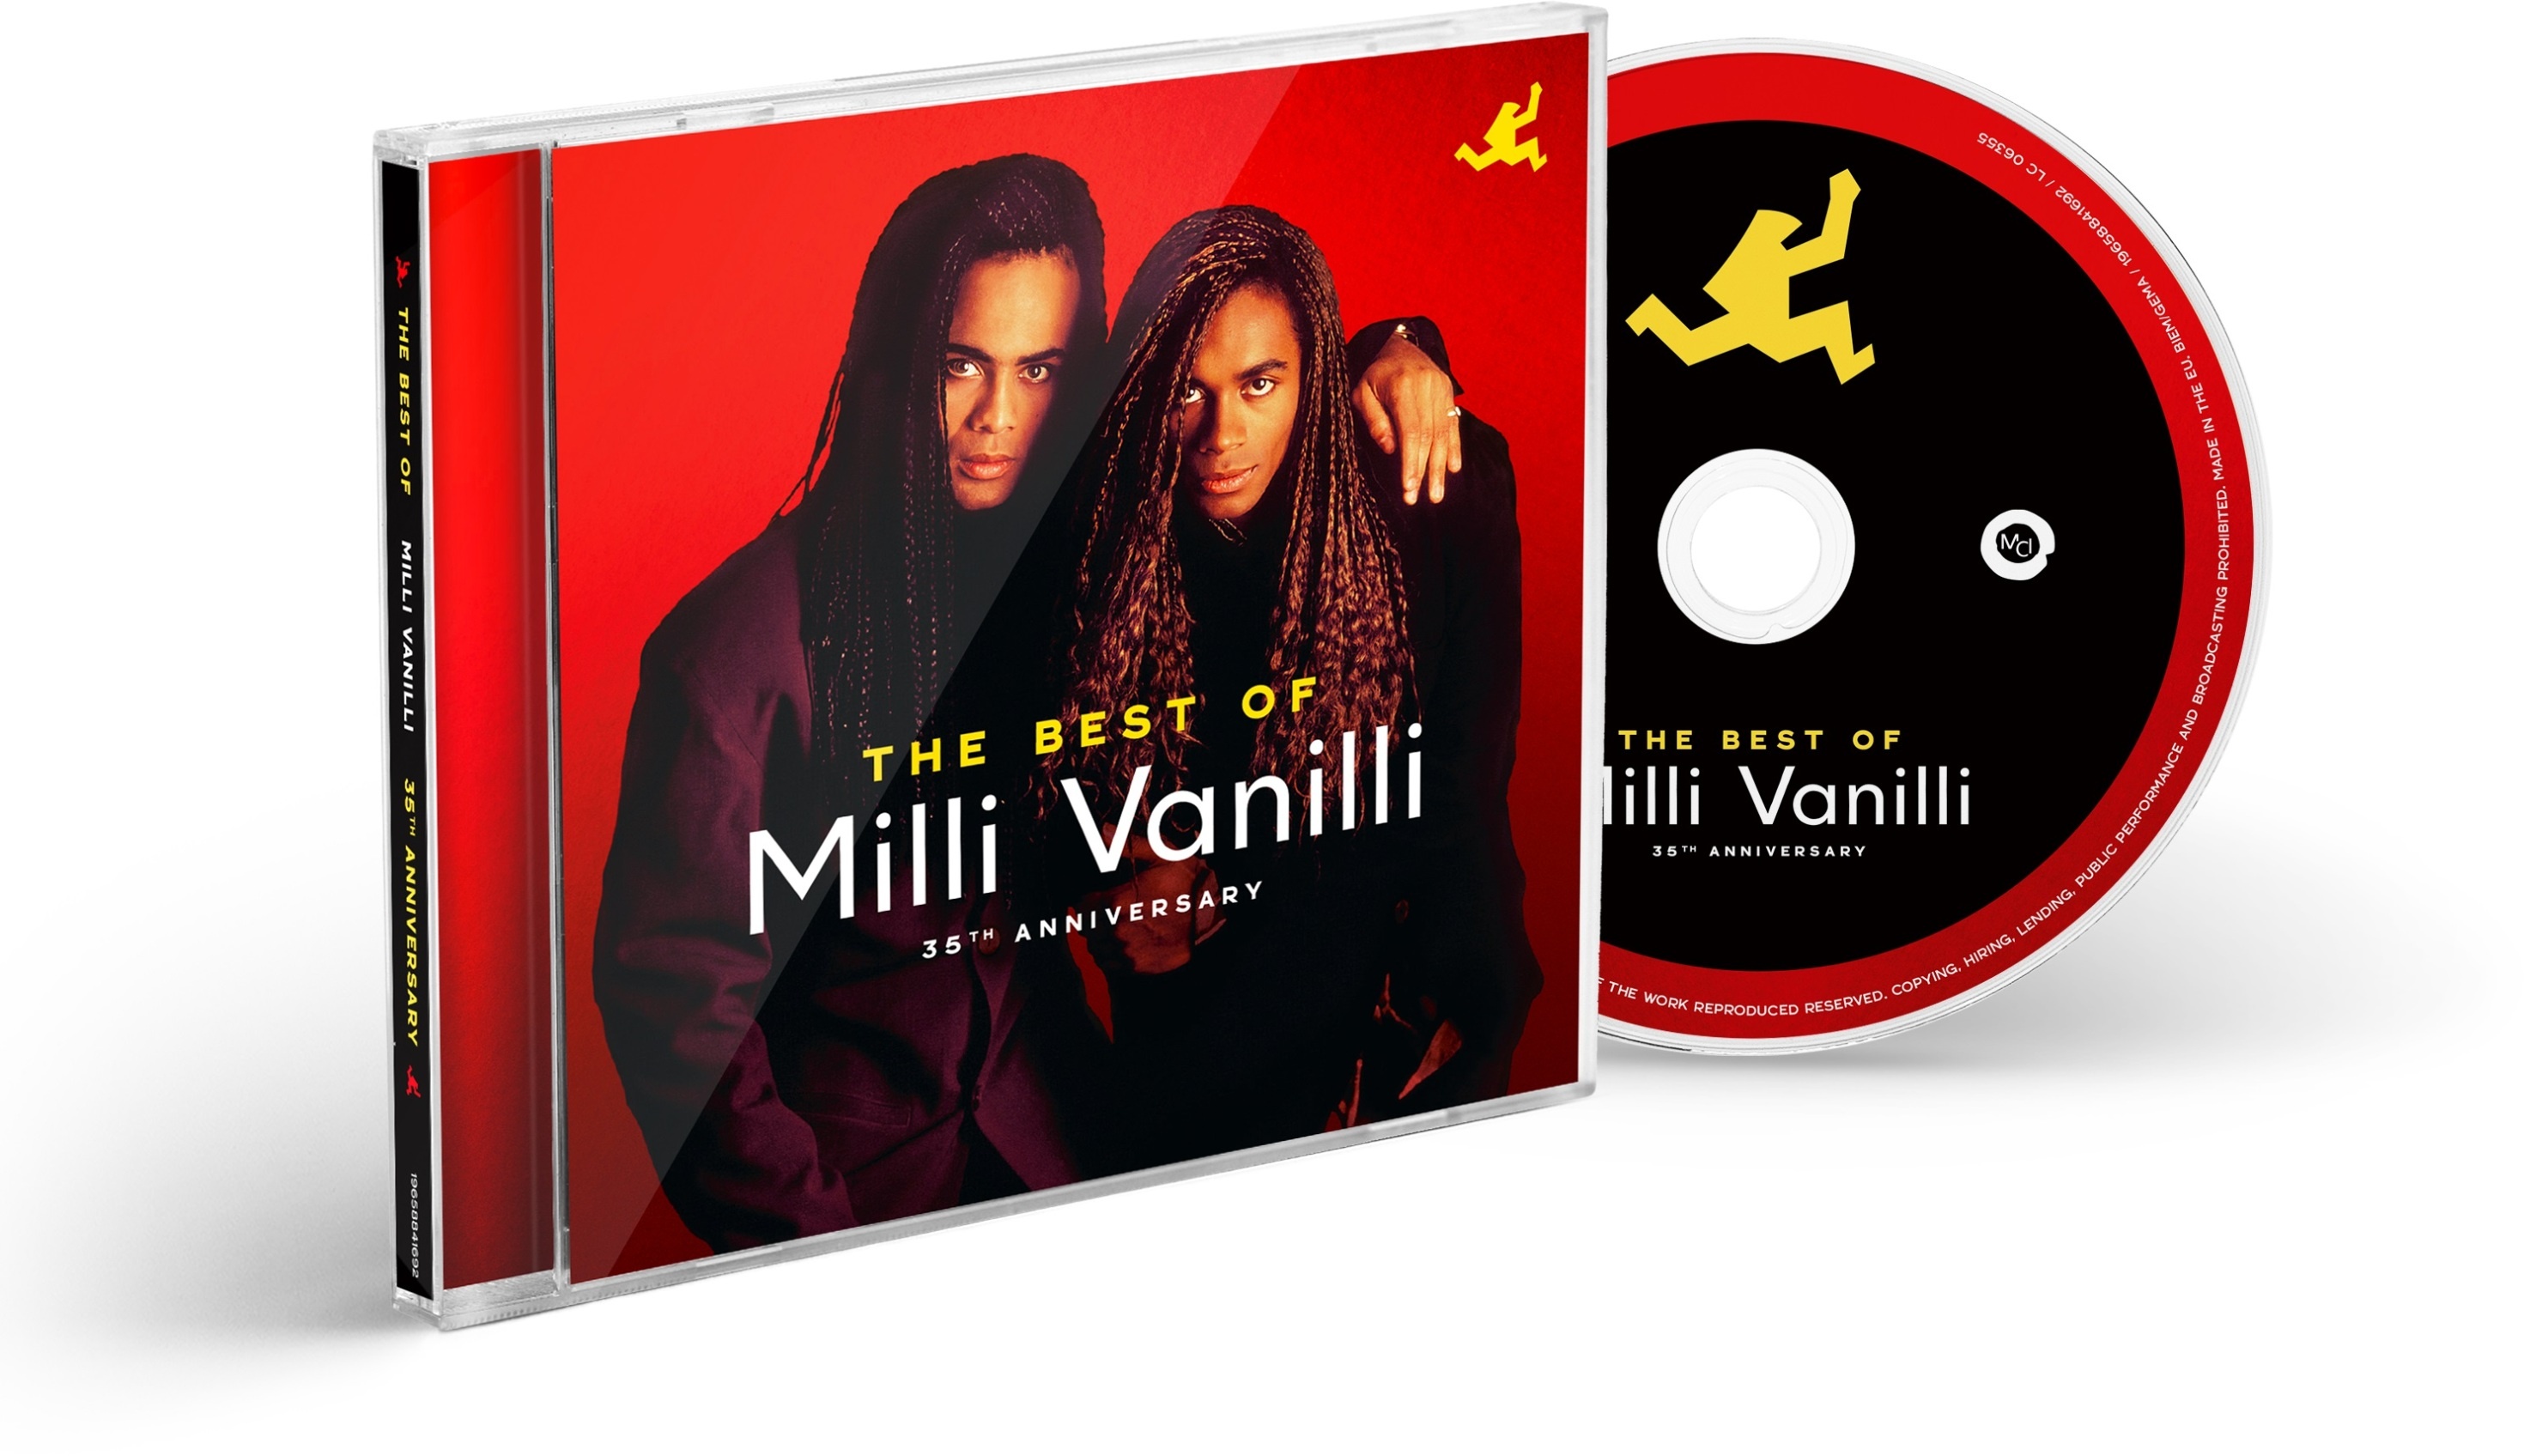 The Best Of Milli Vanilli (35th Anniversary) - Milli Vanilli. (CD)